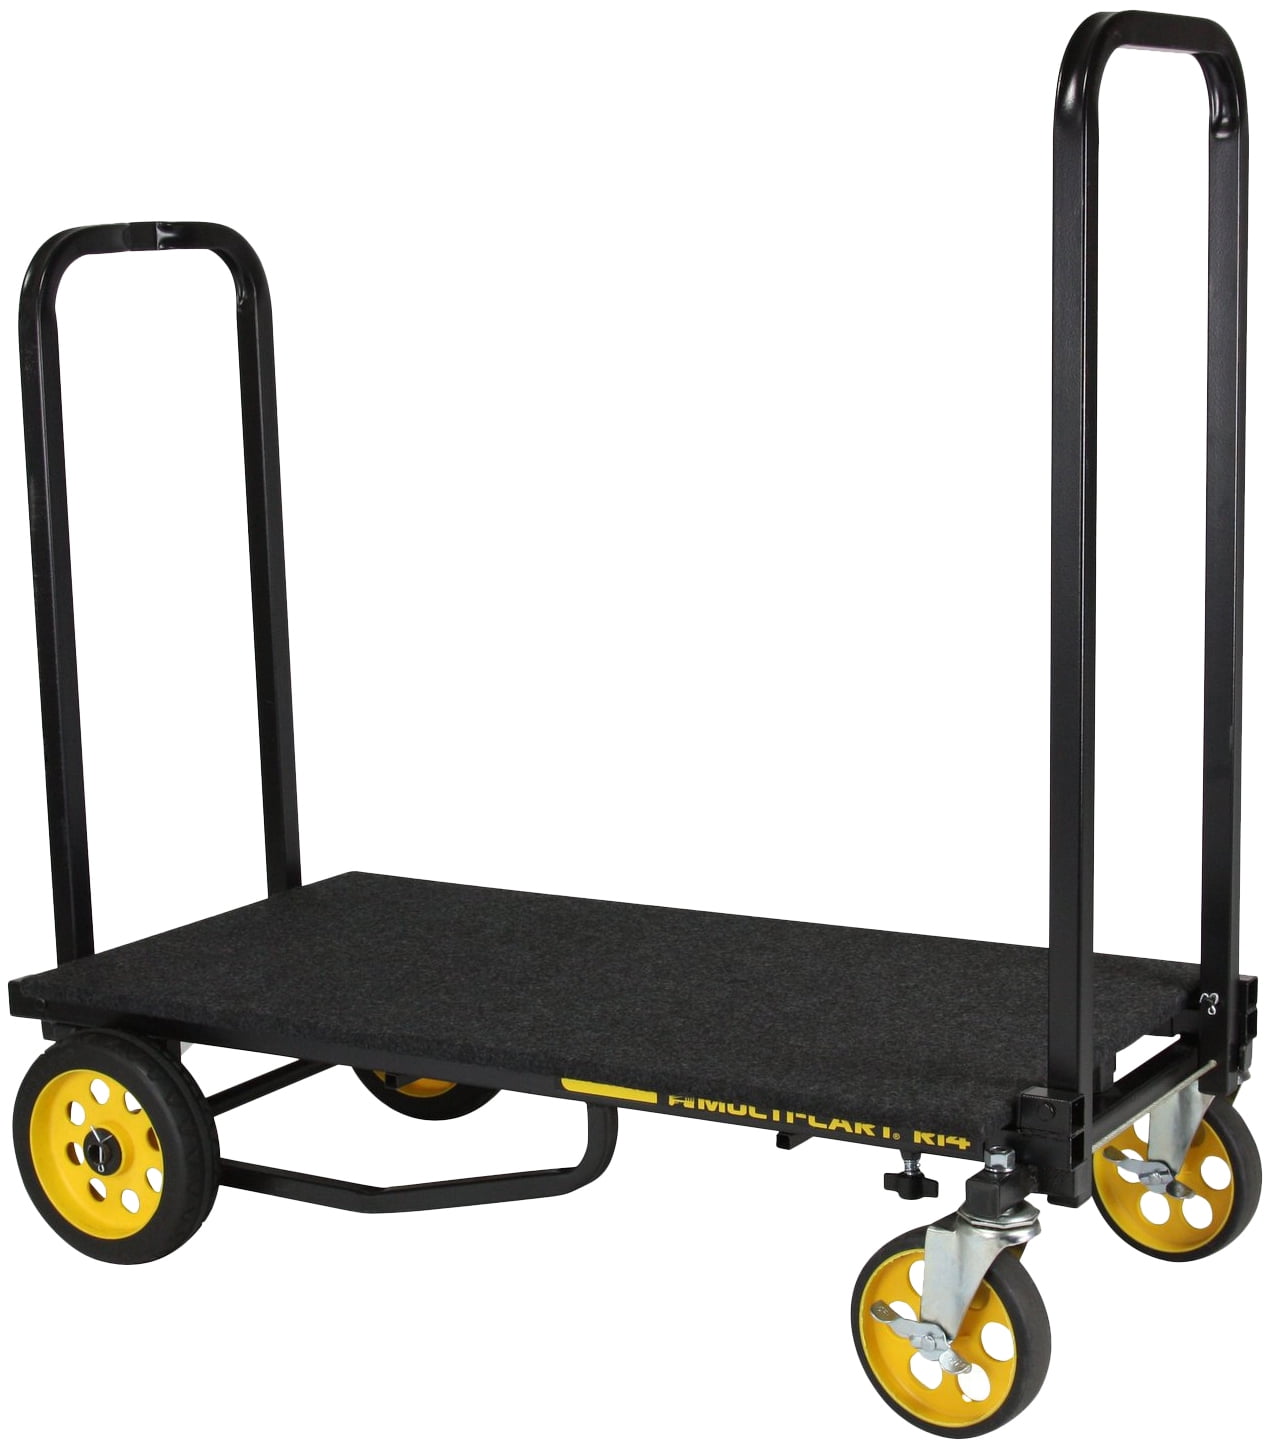 RocknRoller R14G 700lb Capacity DJ Transport Cart+Accessory+Equipment Bag+Deck 